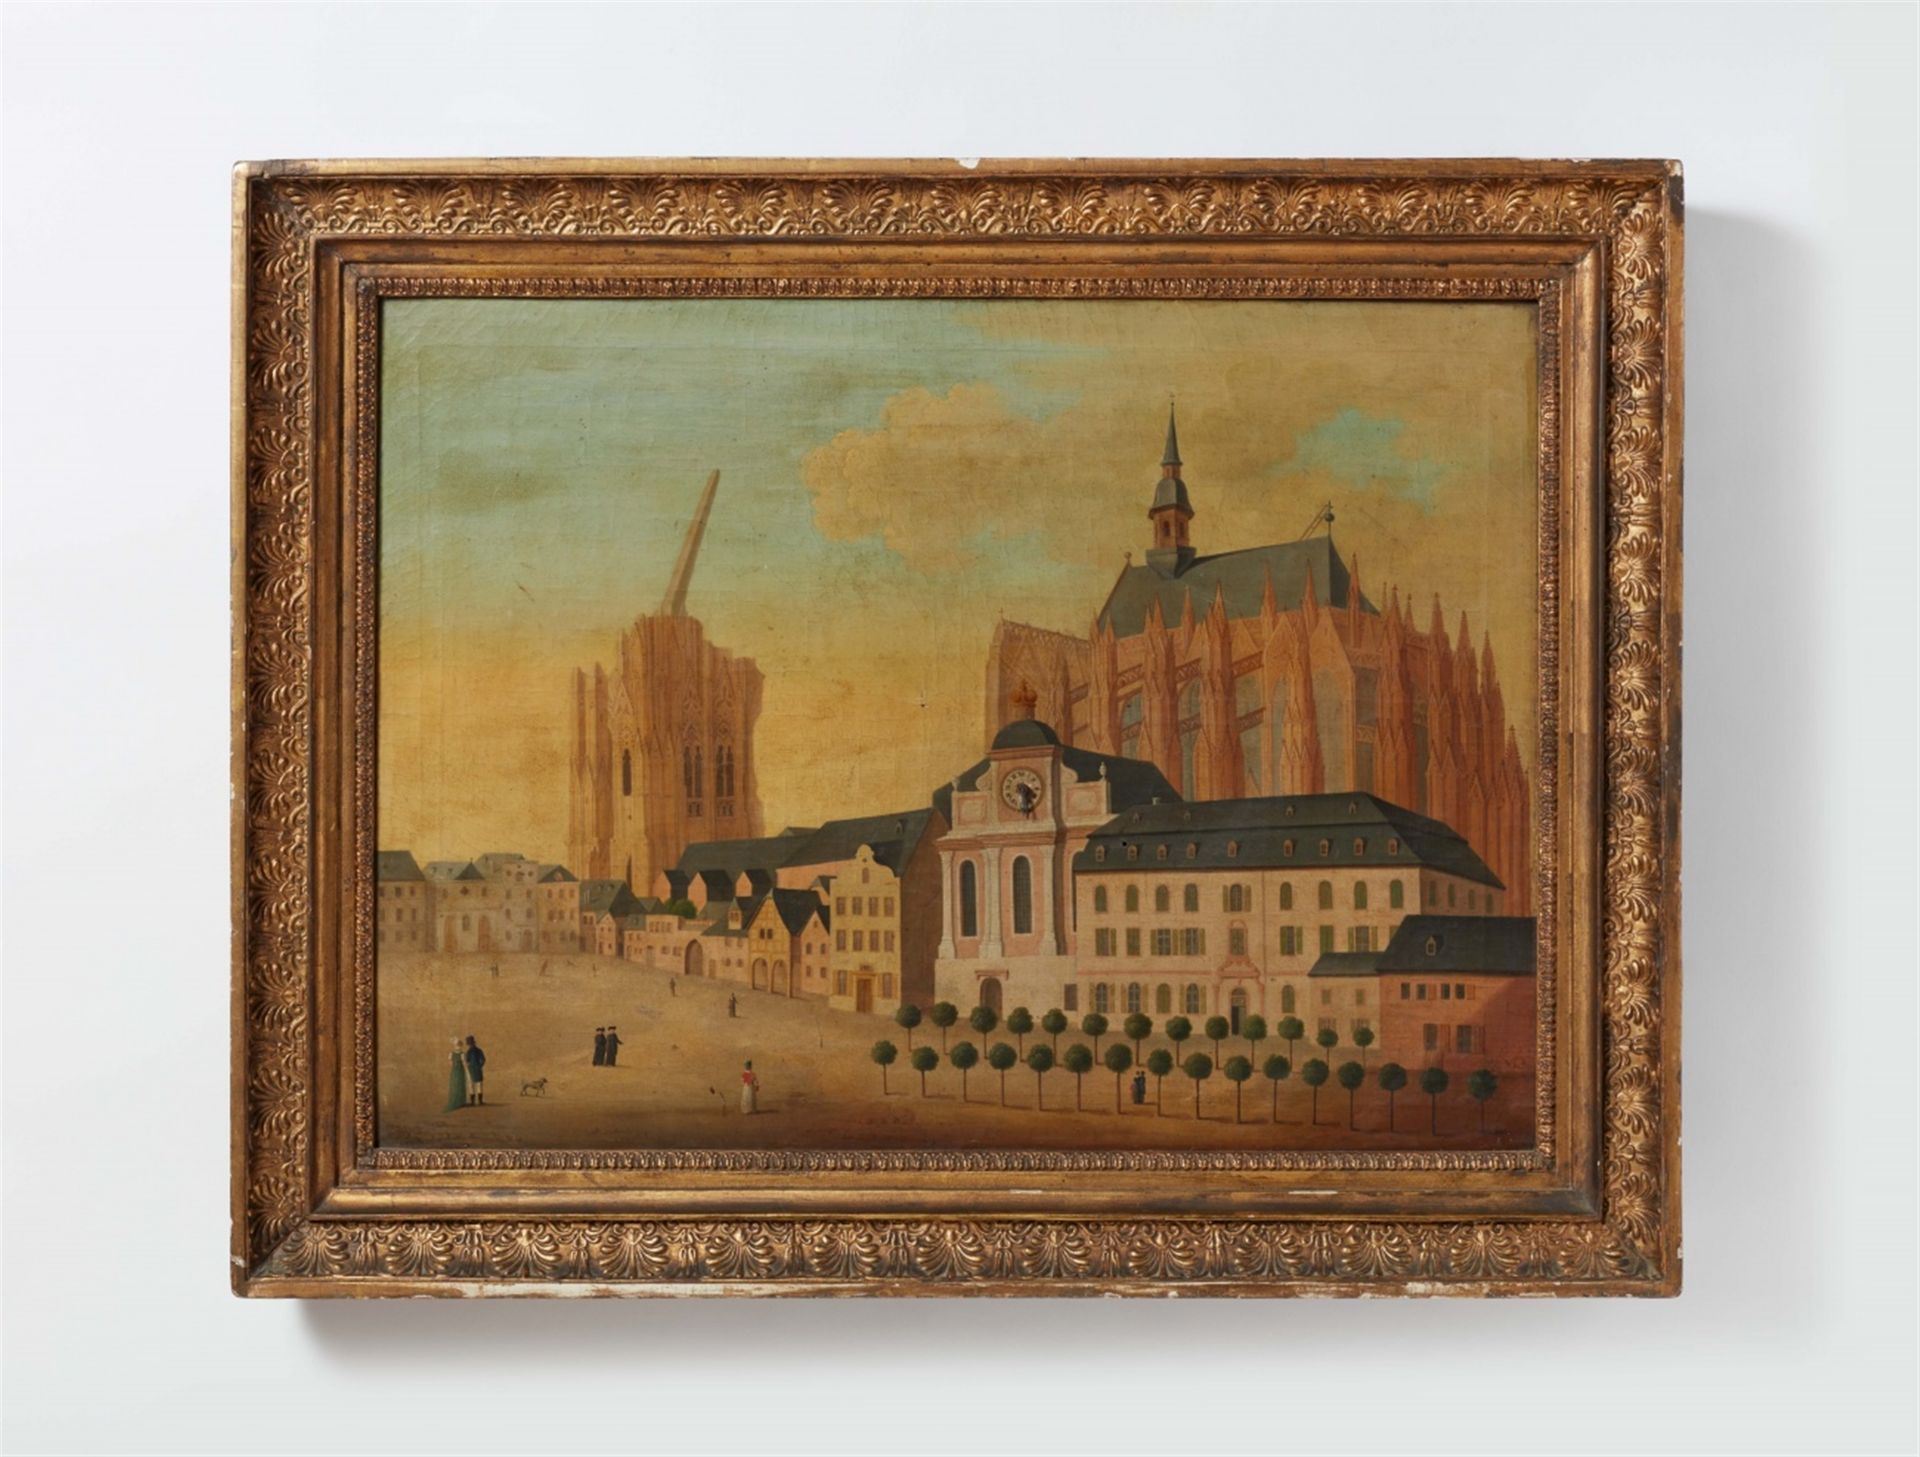 Bilderuhr mit der Ansicht der Kathedrale zu Köln